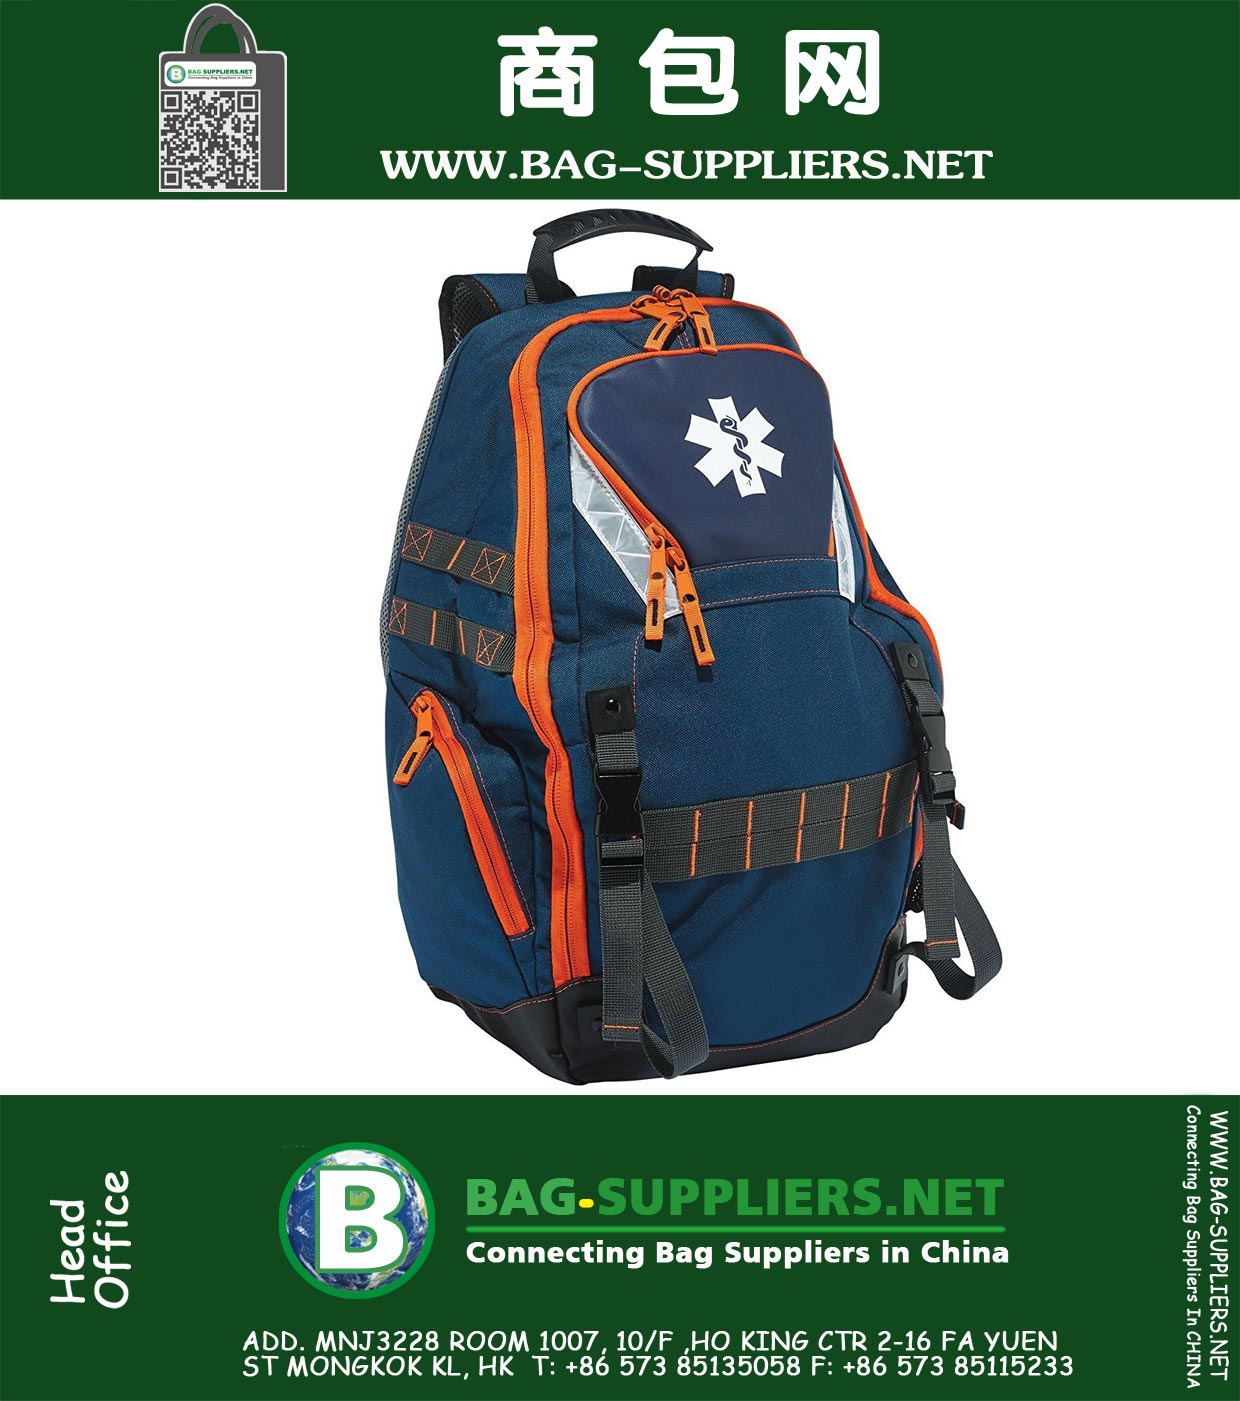 First Responder Medical Supply Backpack Bag for EMS